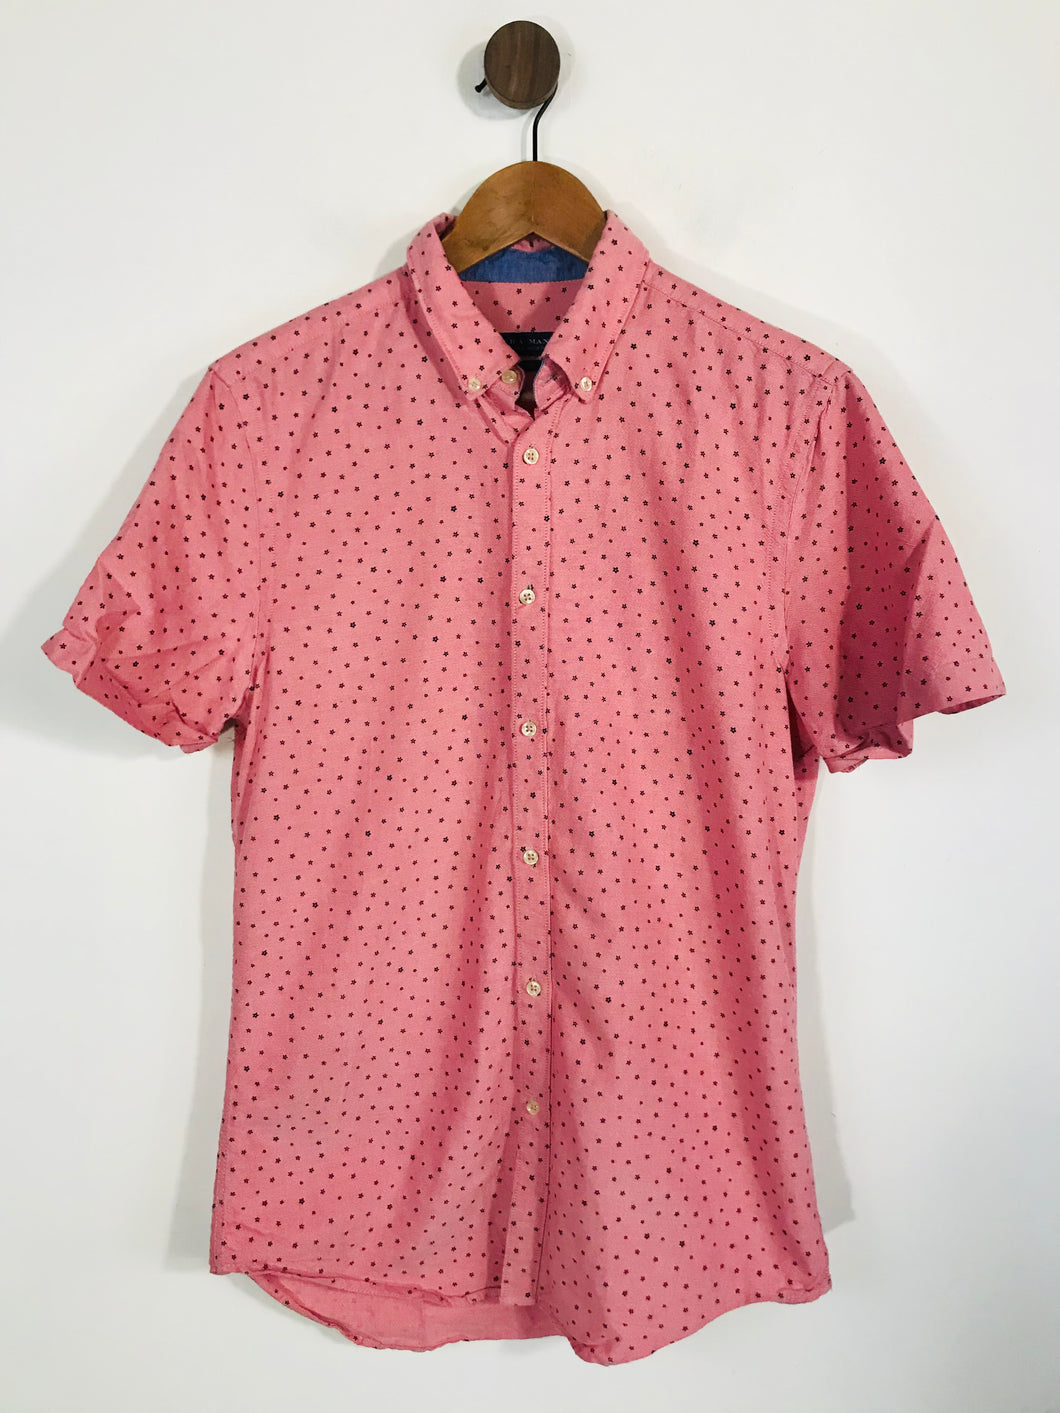 Zara Men's Short Sleeve Button-Up Shirt | M | Pink